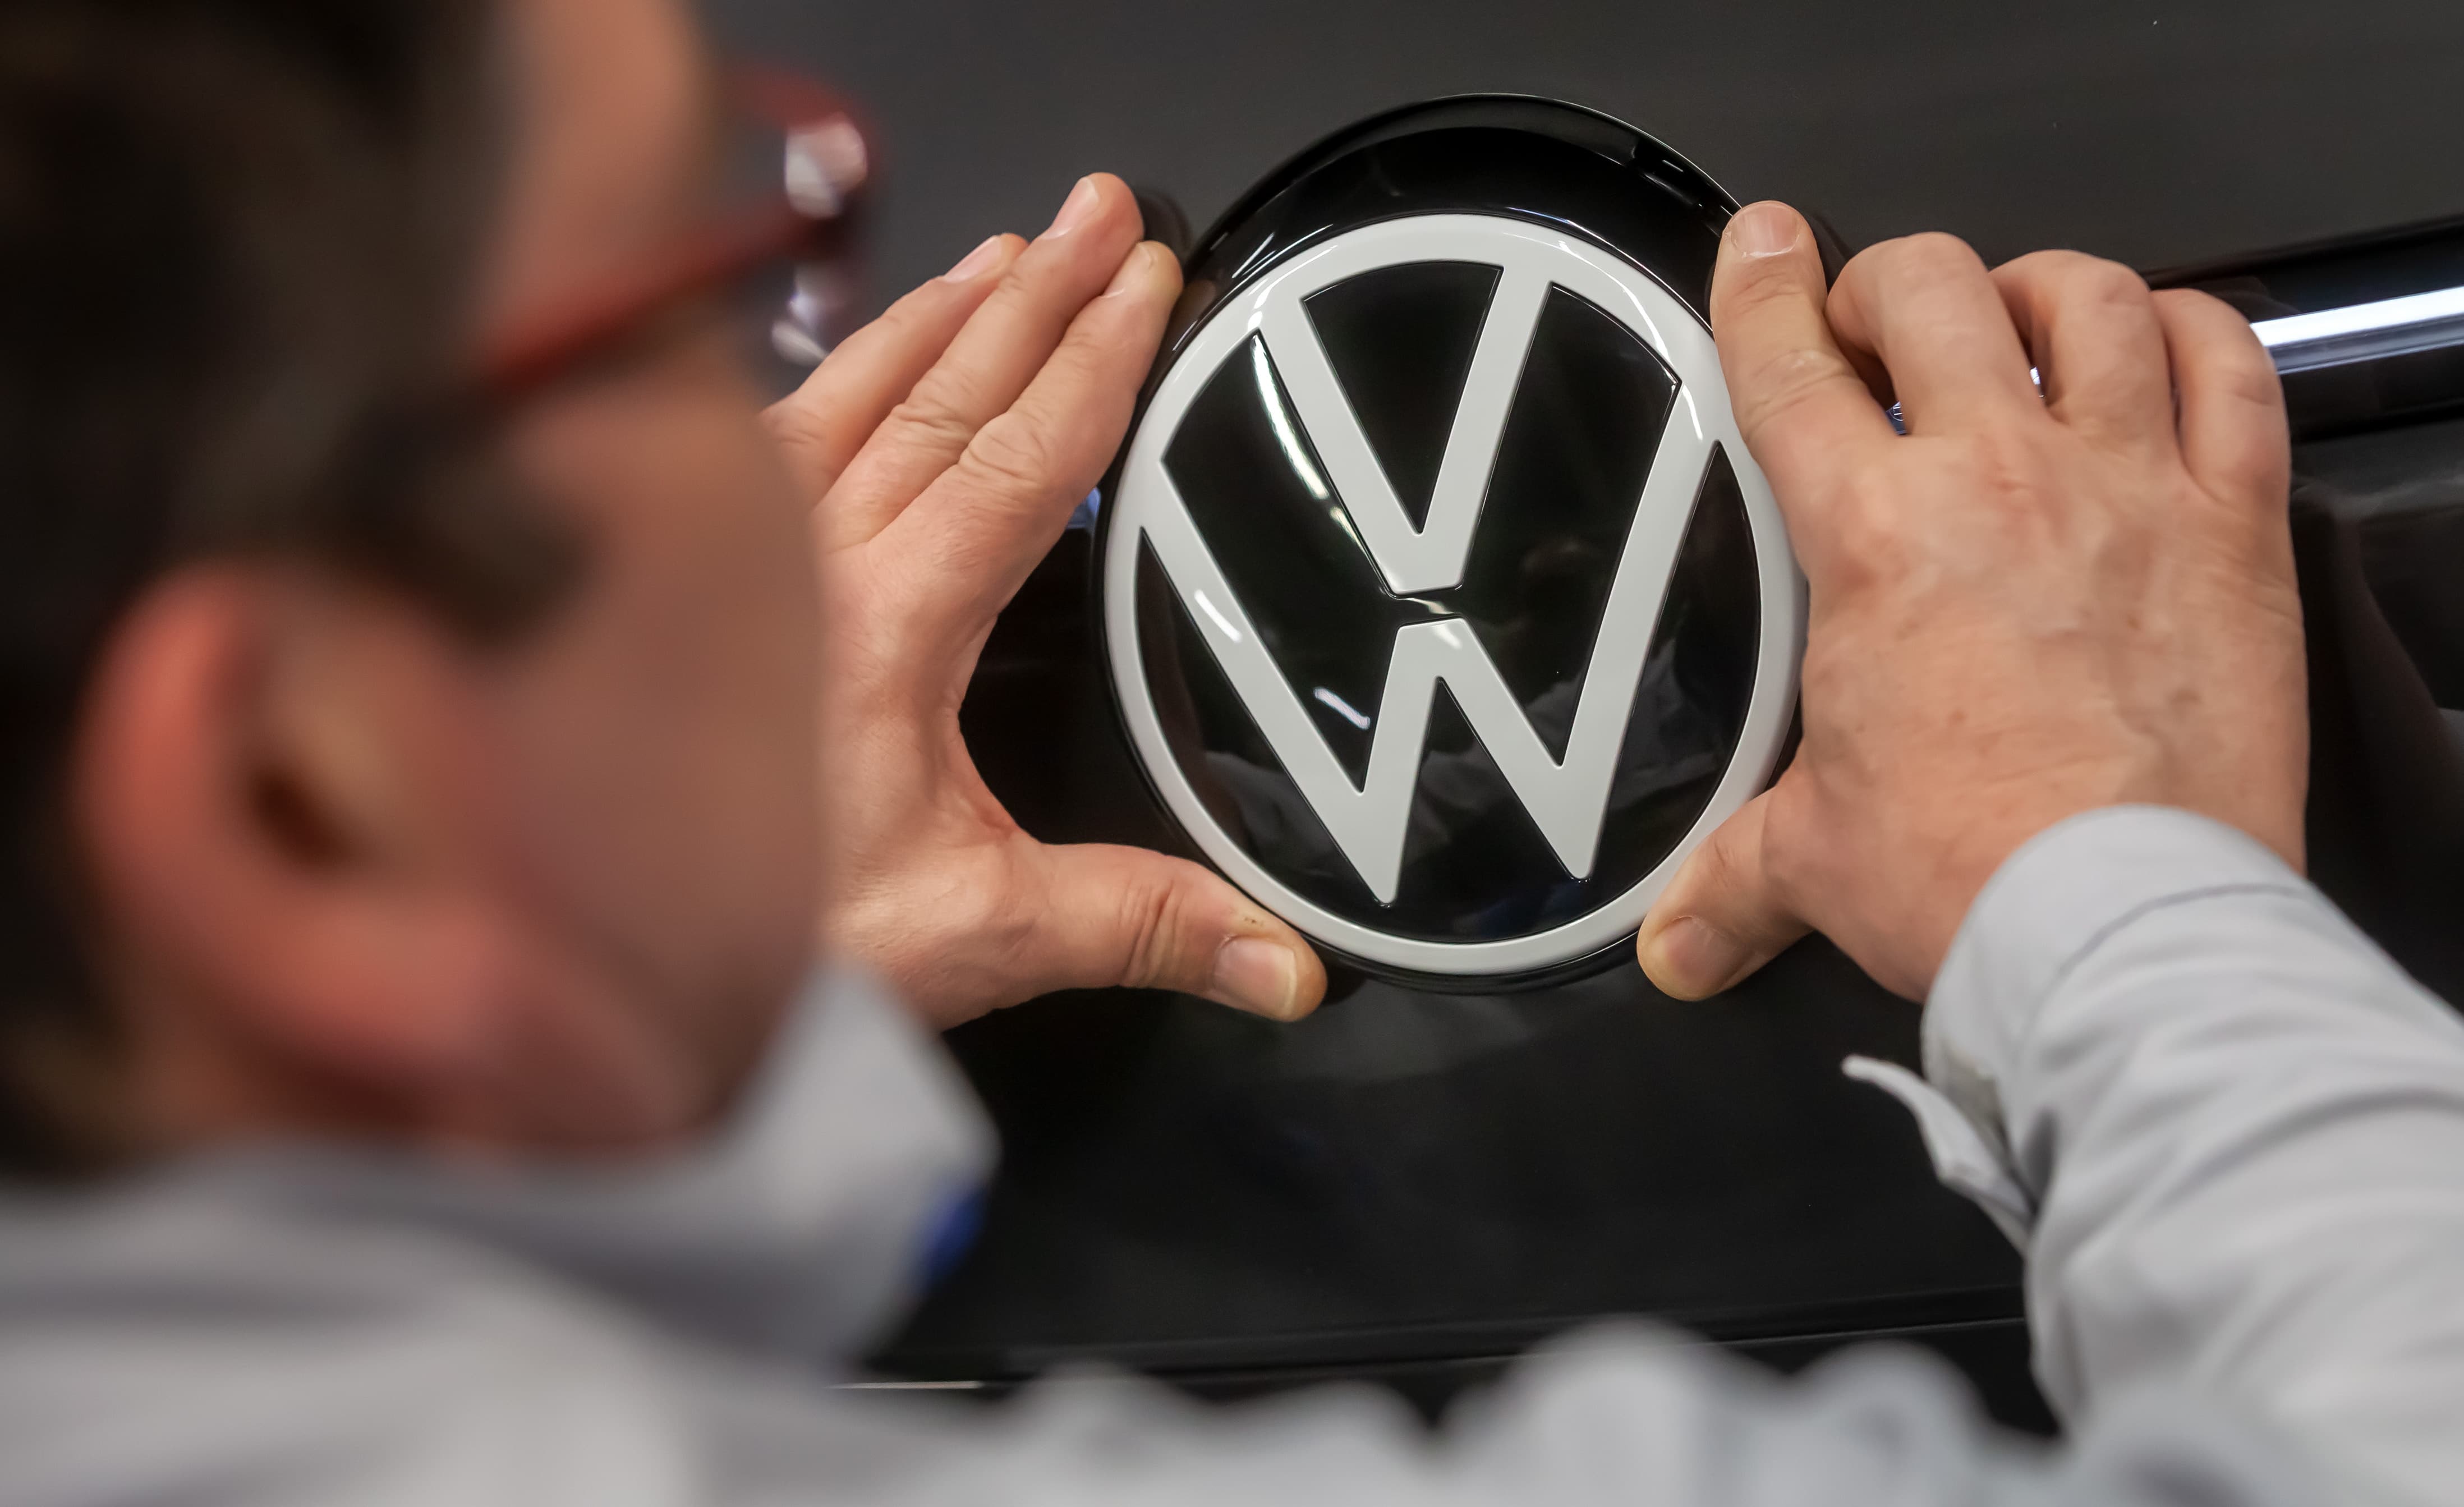 Volkswagen Alman tketicilerle anlat, 'egzoz maniplasyonu' iin 830 milyon avro deyecek